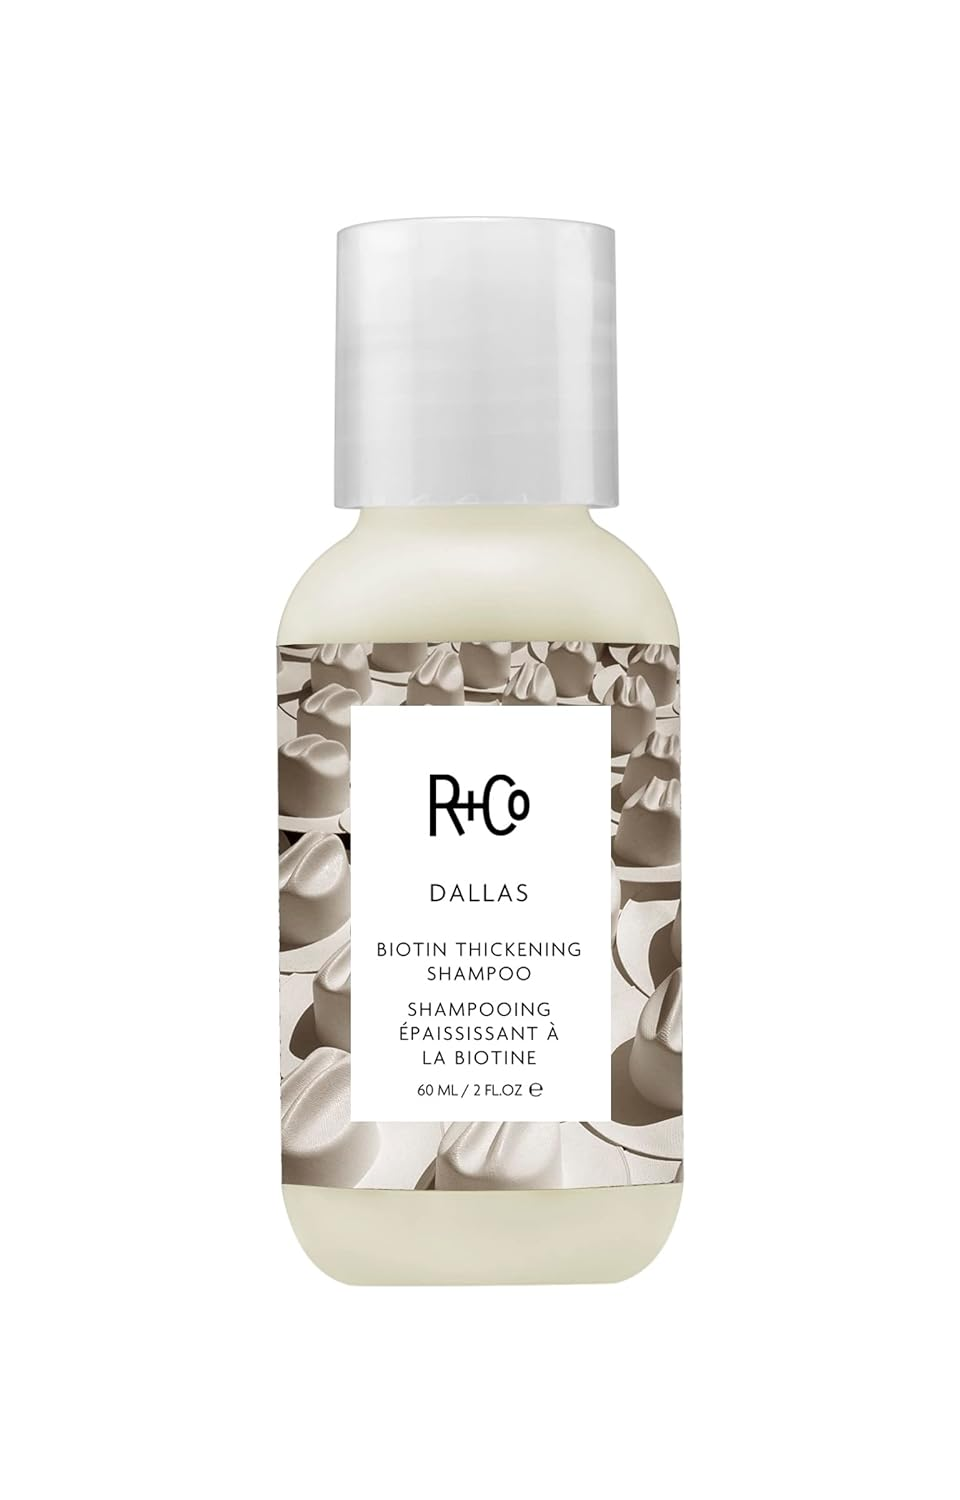 R+Co DALLAS Biotin Thickening Shampoo